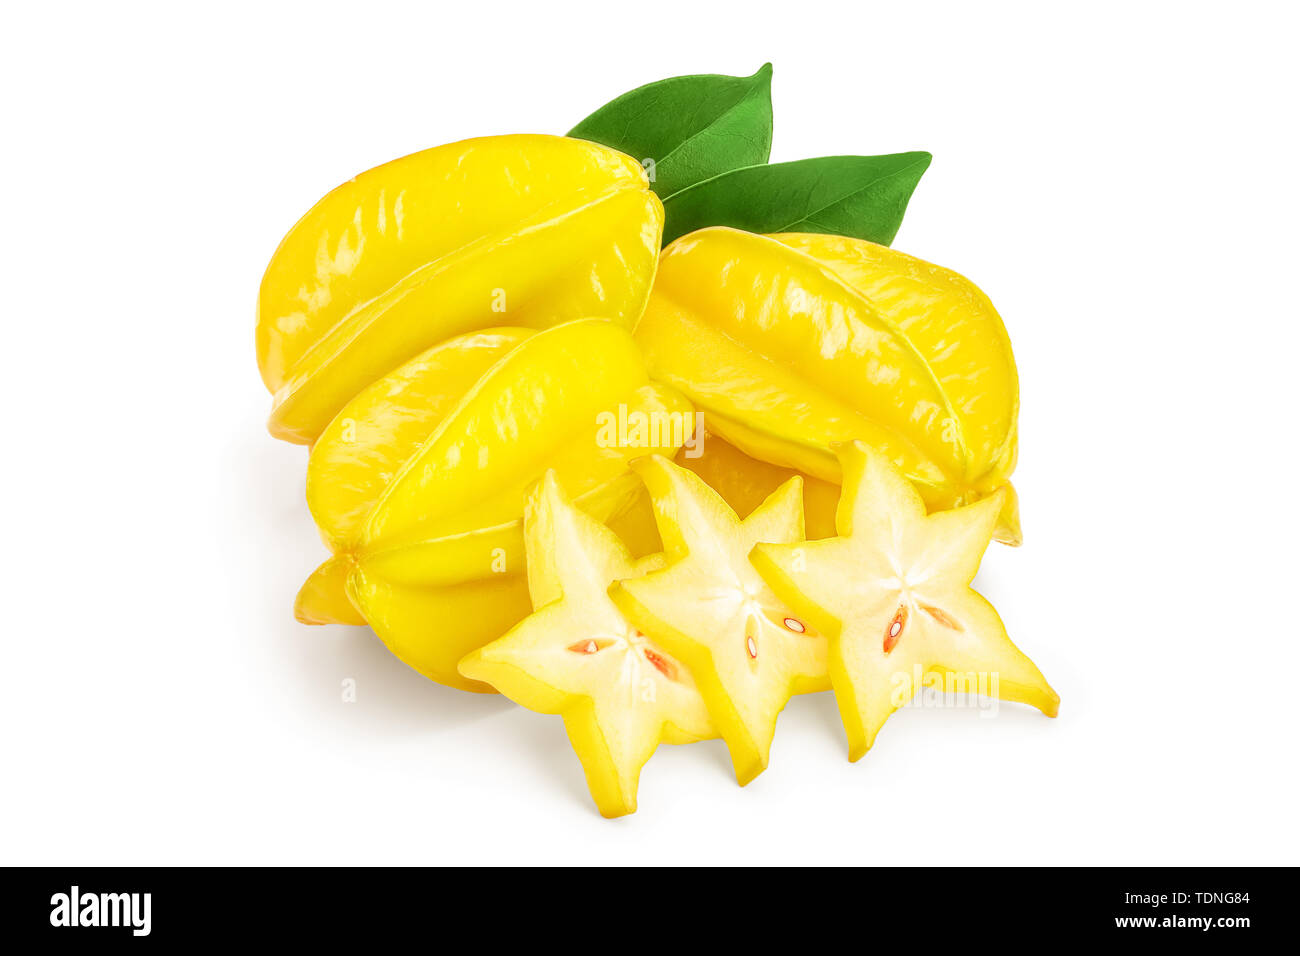 Carambola or star-fruit isolated on white background Stock Photo